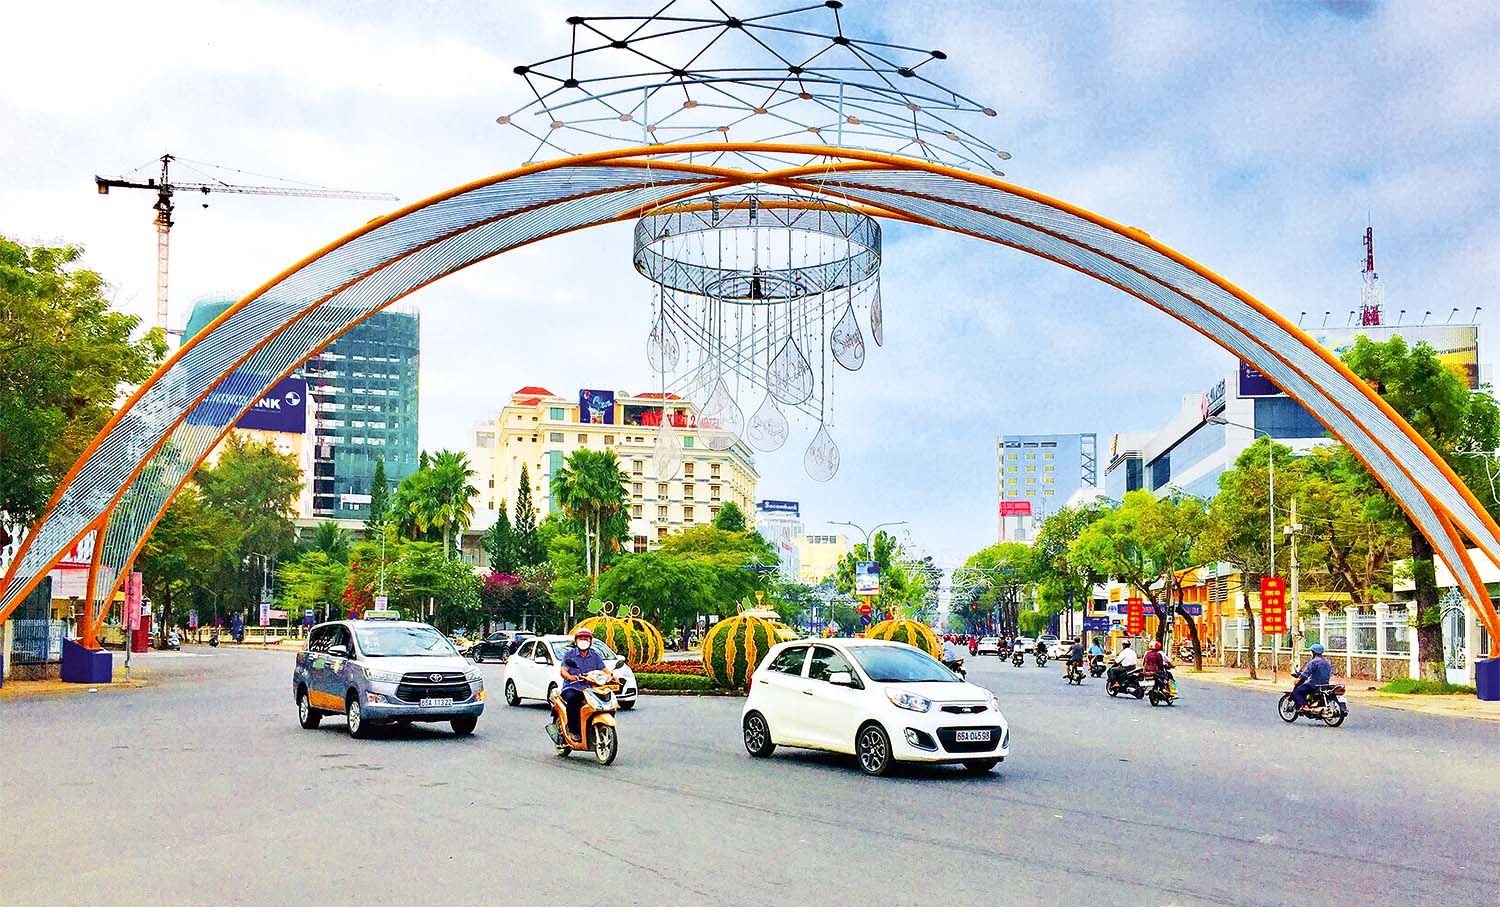 Đại lộ Hòa Bình (quận Ninh Kiều) trung tâm của TP. Cần Thơ, điểm đến của các Dự án thương mại, dịch vụ  	Ảnh: Huy Tự